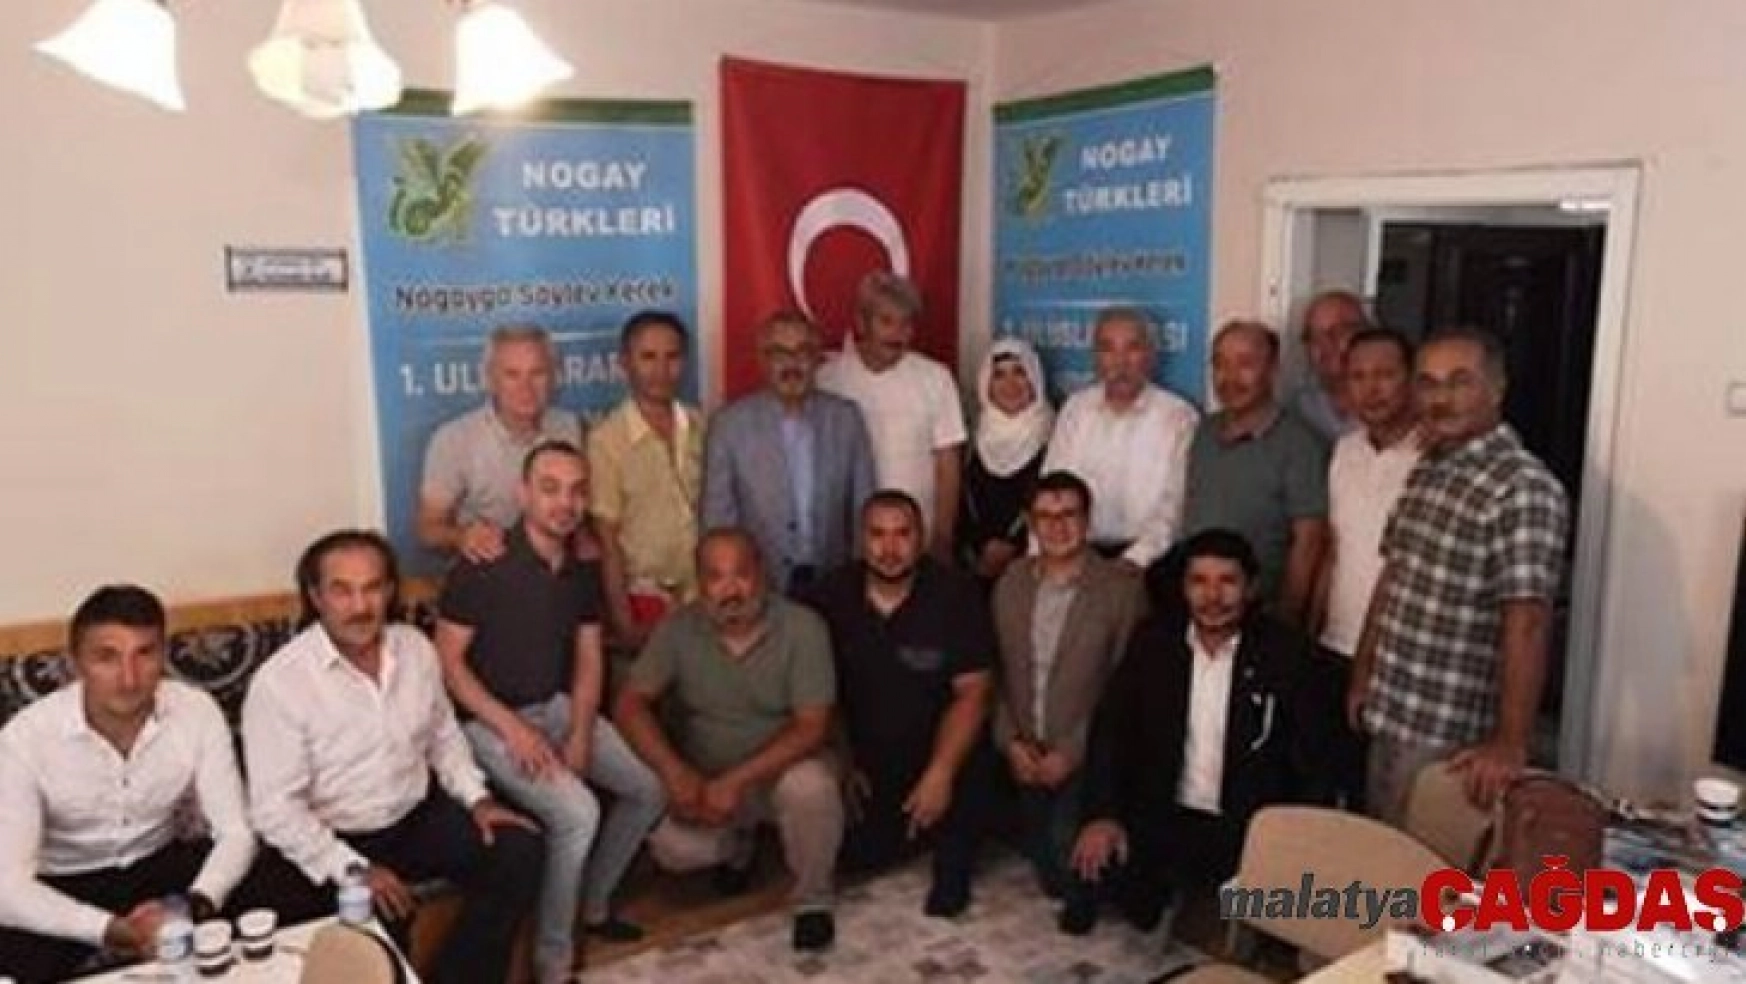 Uluslararası Nogay Türkleri Çalıştayı Ankara'da yapıldı